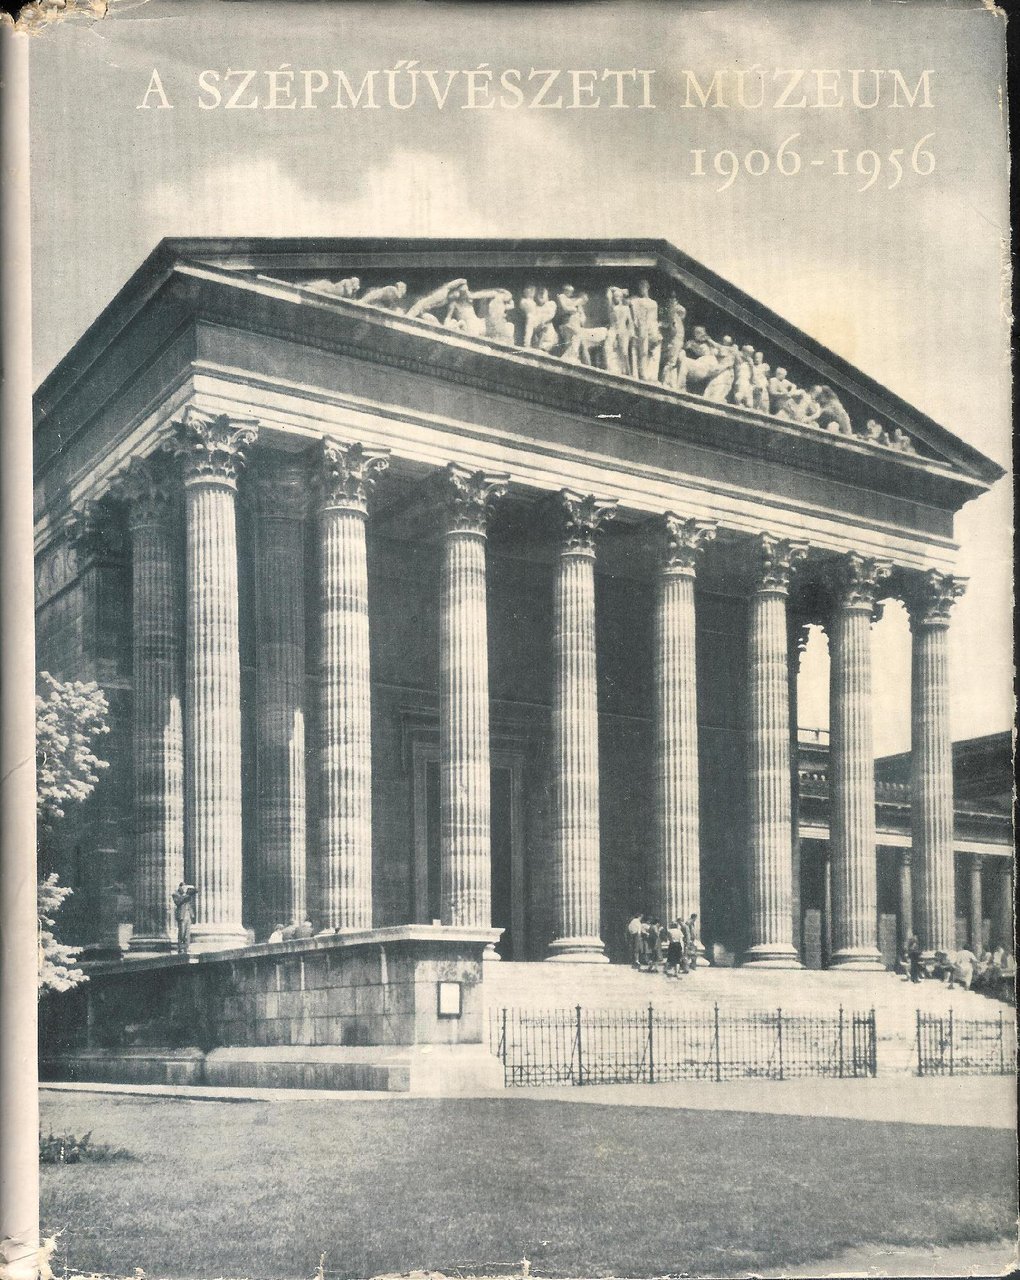 A Szépmuvészeti Múzeum 1906-1956